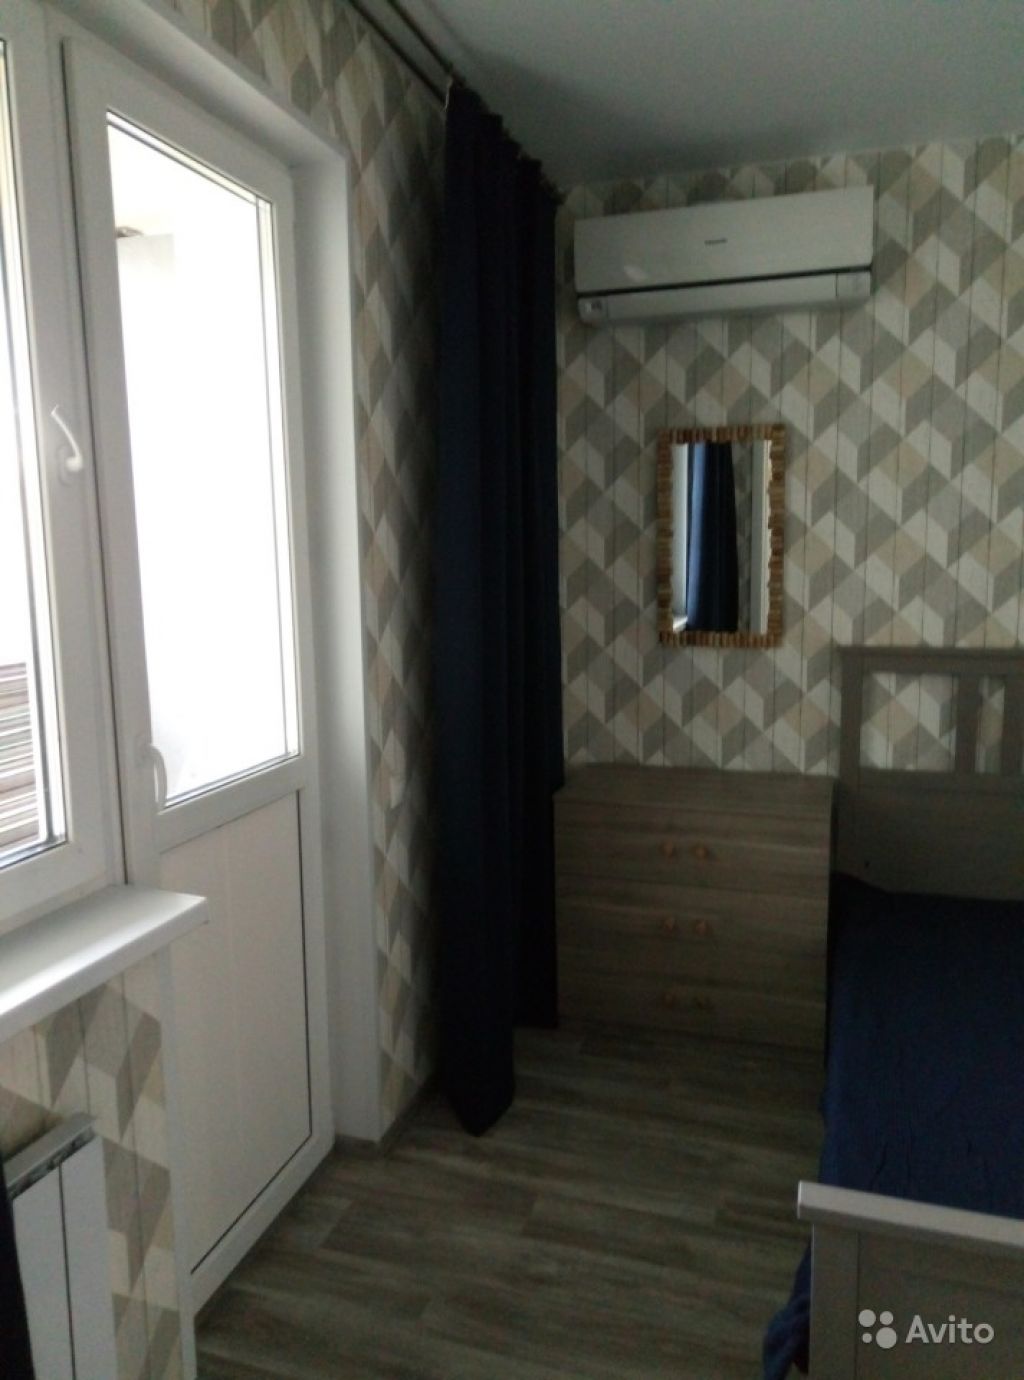 Сдам квартиру 1-к квартира 40.1 м² на 3 этаже 17-этажного монолитного дома в Москве. Фото 1